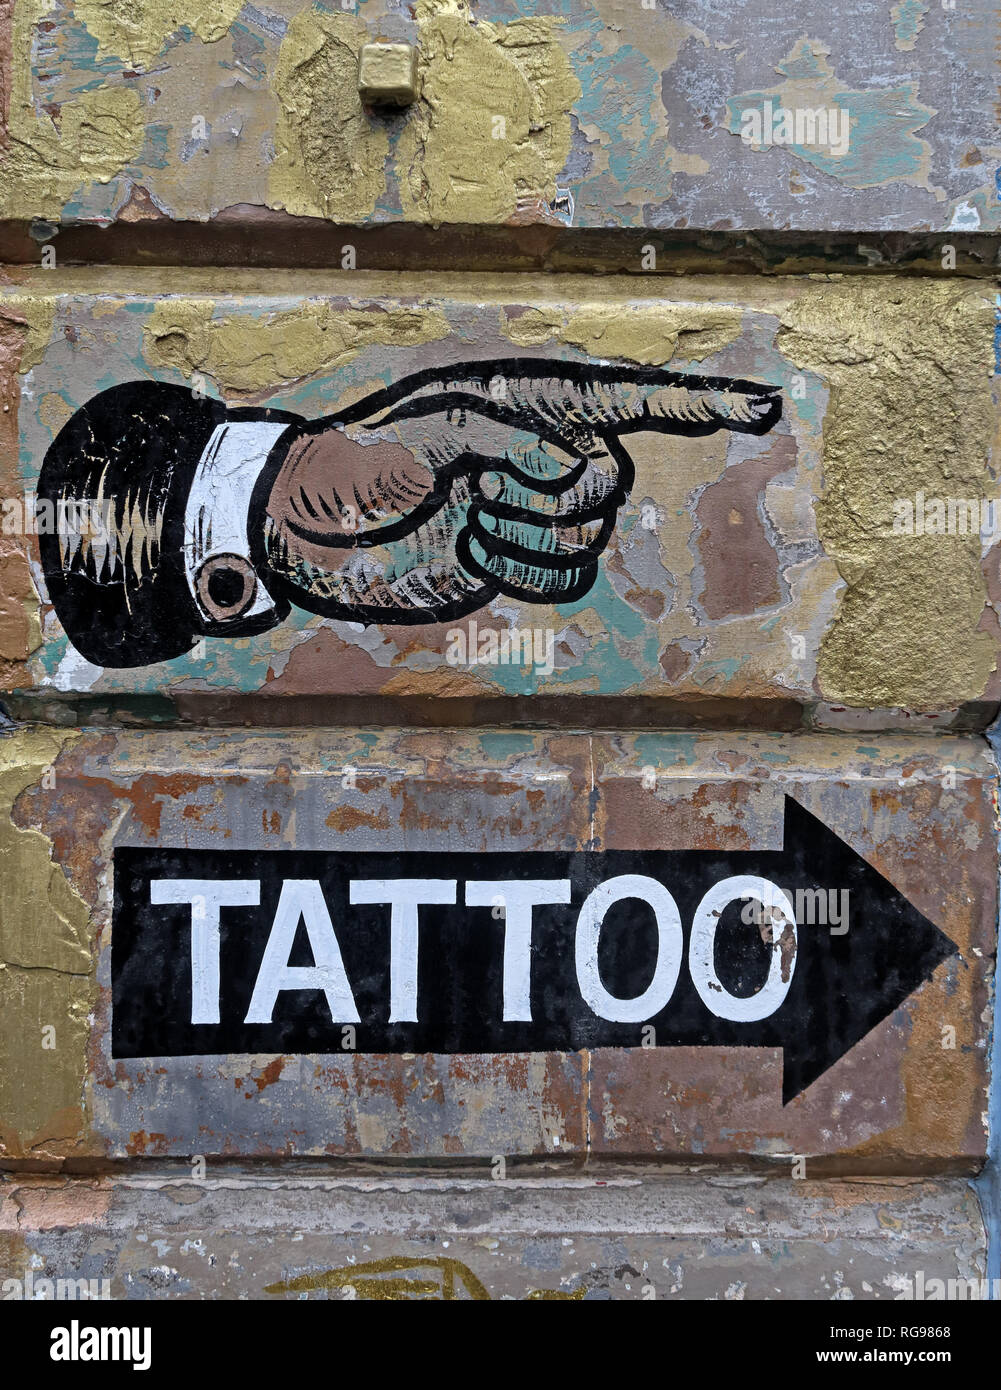 Main pointant vers la droite, de tatouage de cette façon, peintes sur le mur, Édimbourg, Écosse, Royaume-Uni Banque D'Images